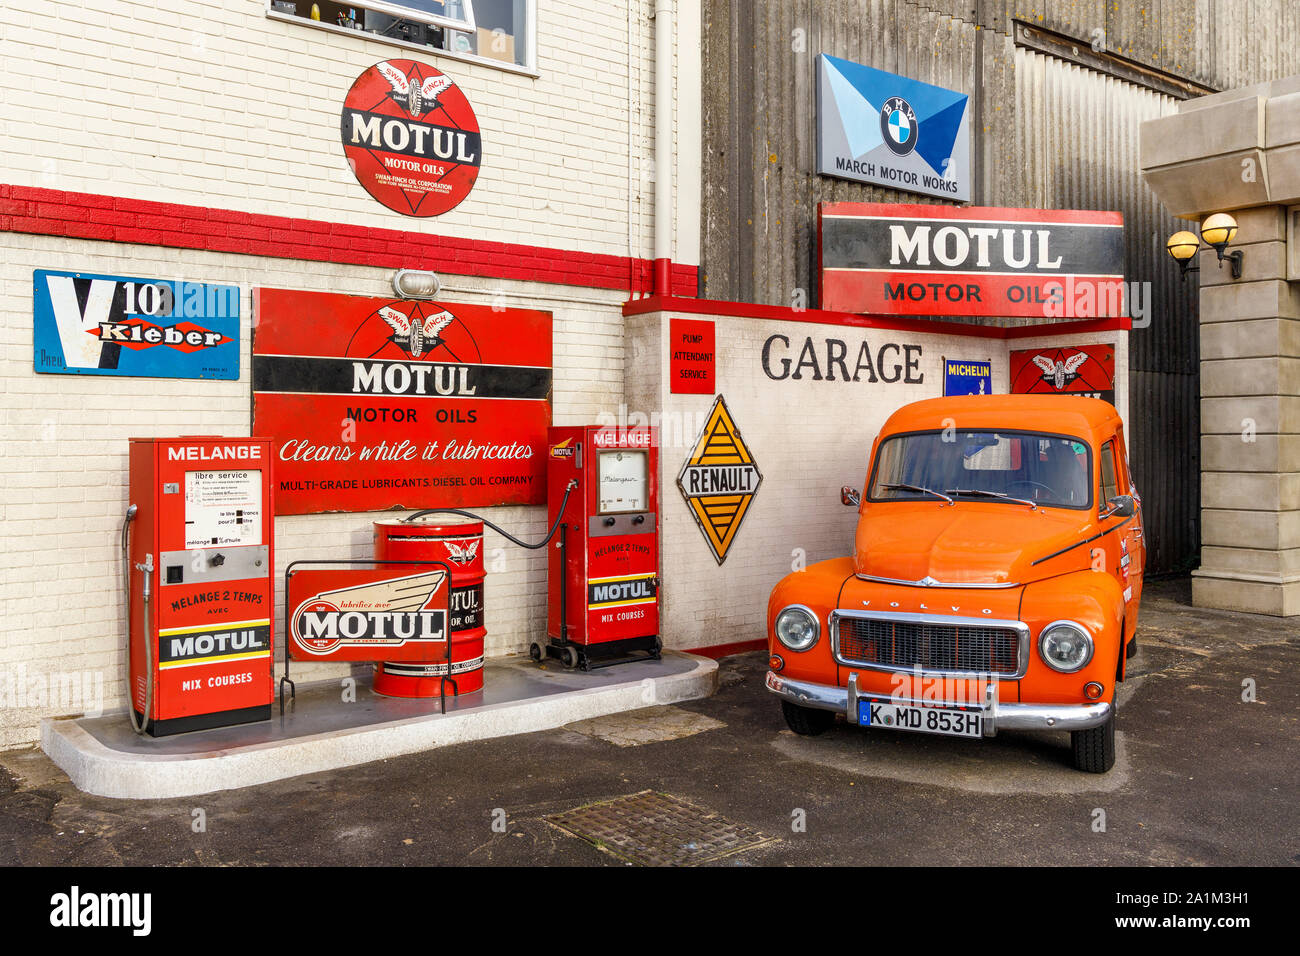 Simulierte Motul Garage mit einem orangen Volvo Amazon auf dem Vorplatz. An der 2019 Goodwood Revival, Sussex, UK angezeigt. Stockfoto